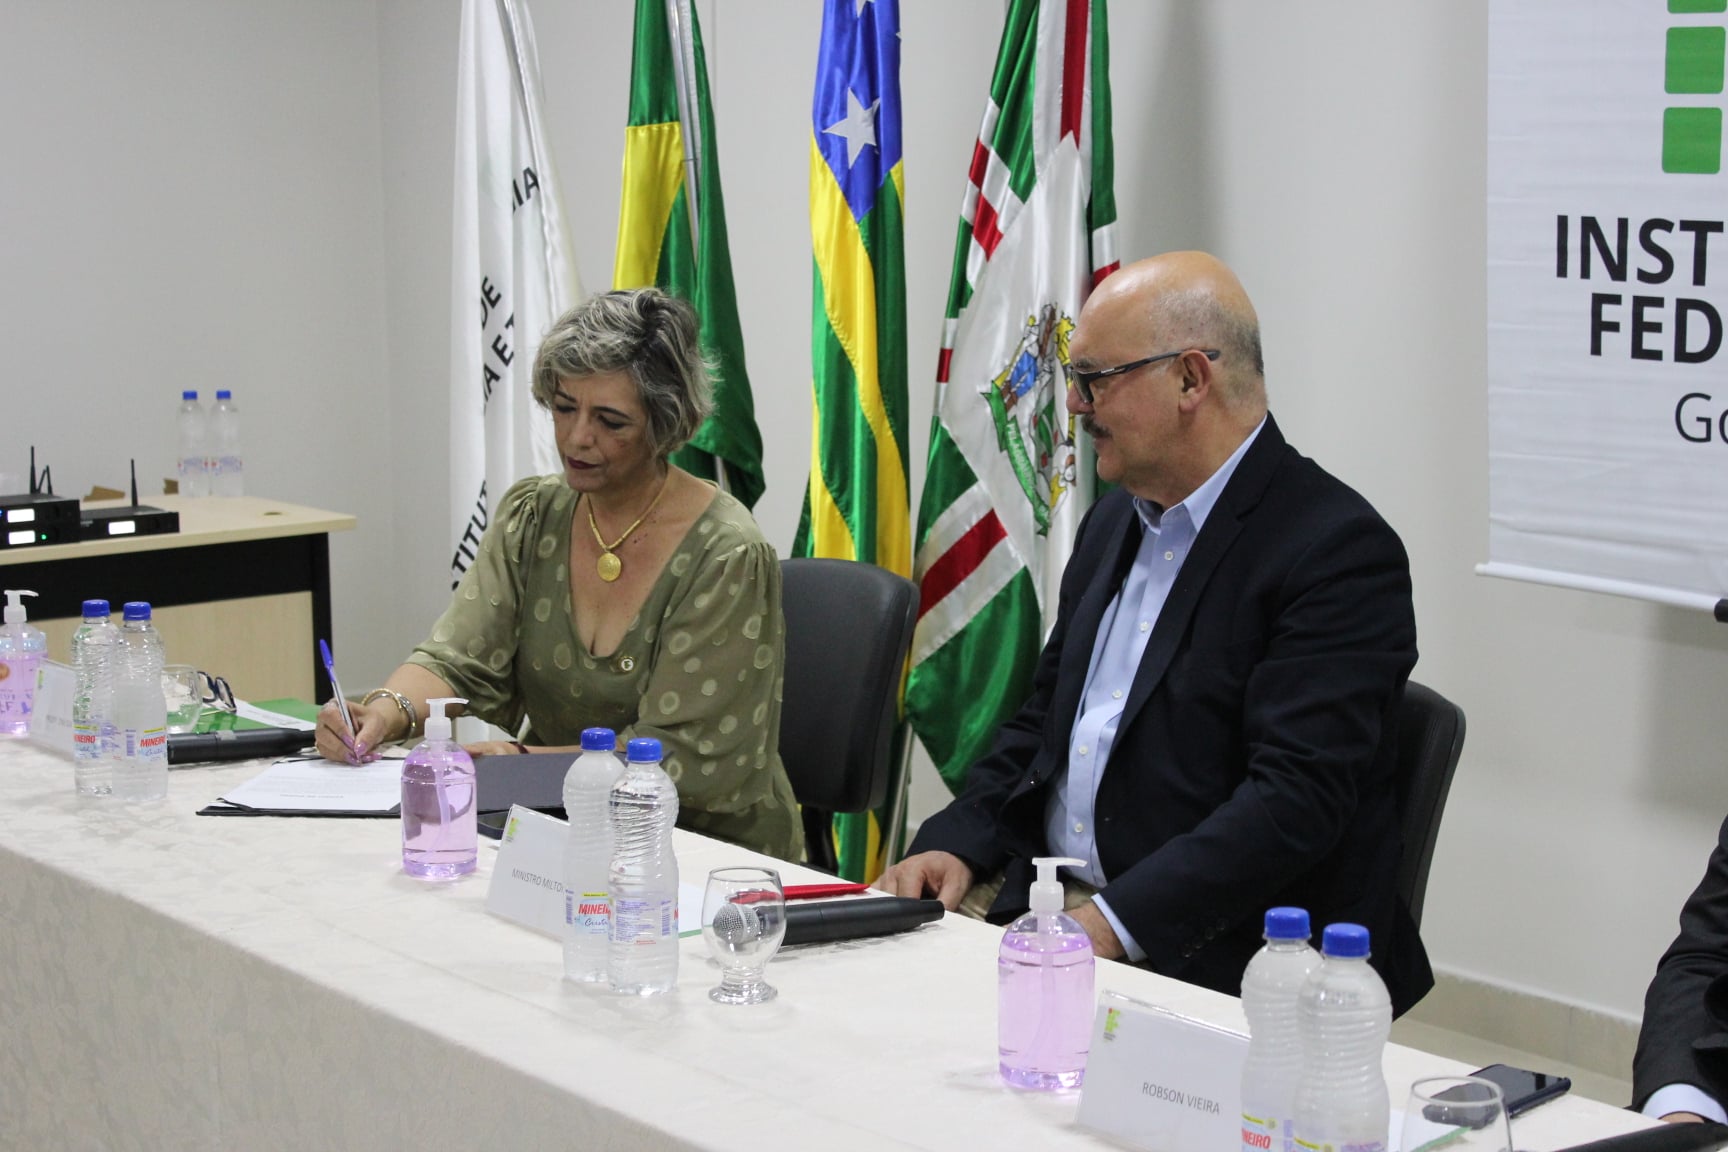 A solenidade de posse, presidida pelo Ministro da Educação, Milton Ribeiro, foi realizada na Reitoria do IFG